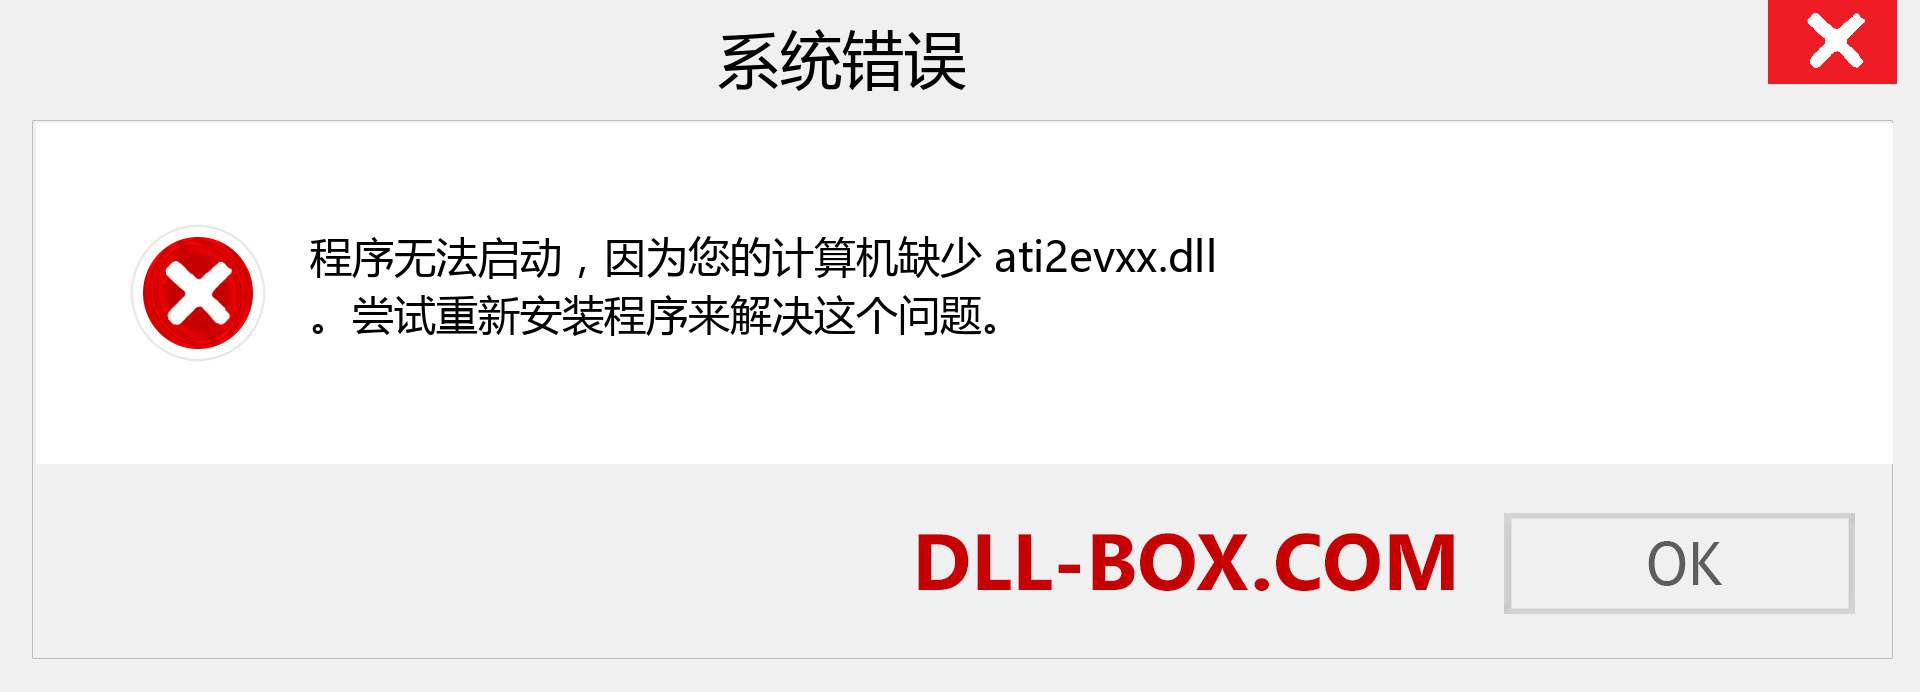 ati2evxx.dll 文件丢失？。 适用于 Windows 7、8、10 的下载 - 修复 Windows、照片、图像上的 ati2evxx dll 丢失错误